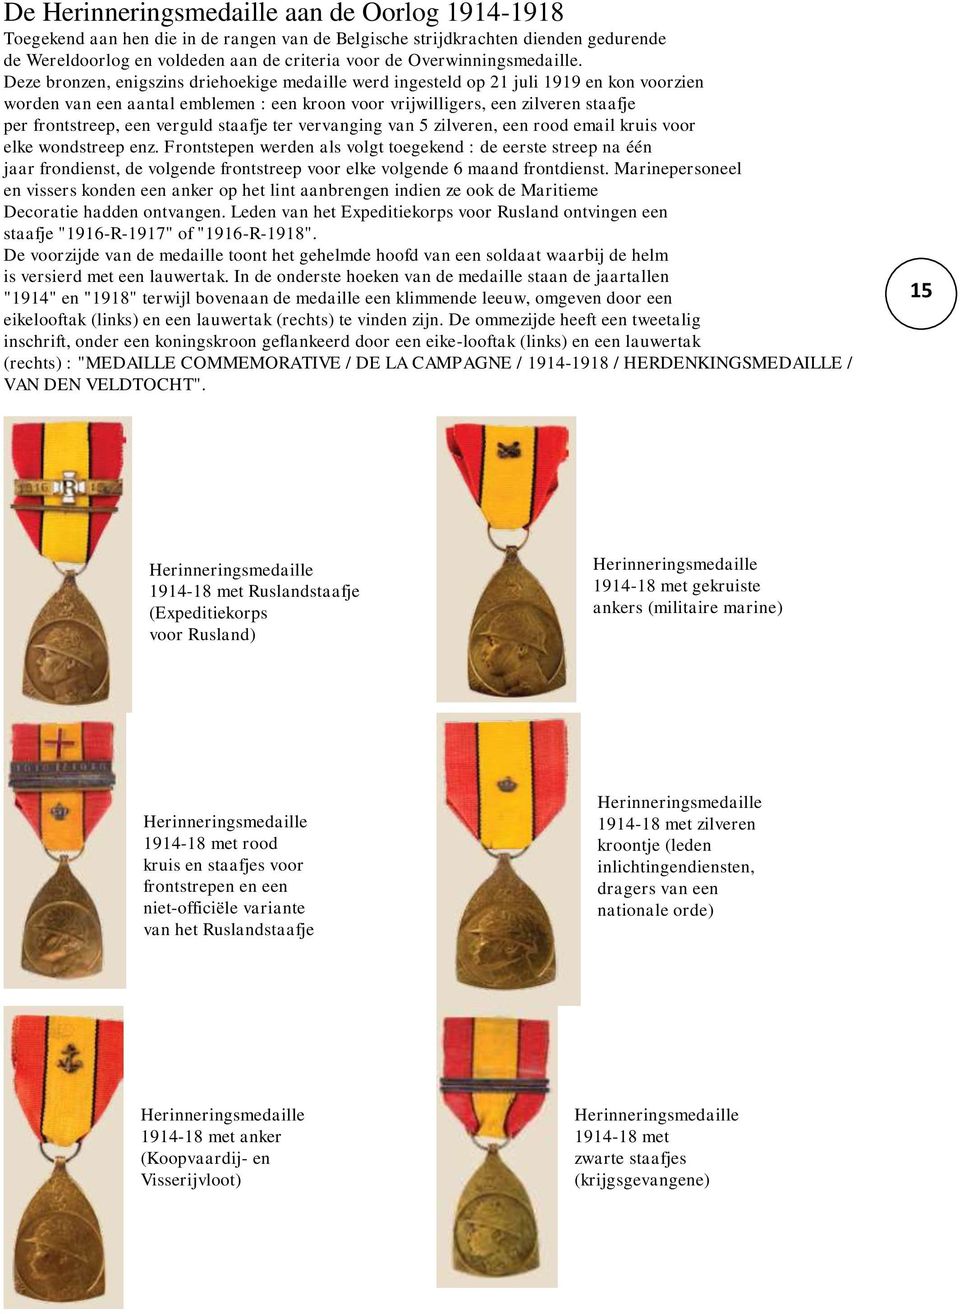 Deze bronzen, enigszins driehoekige medaille werd ingesteld op 21 juli 1919 en kon voorzien worden van een aantal emblemen : een kroon voor vrijwilligers, een zilveren staafje per frontstreep, een